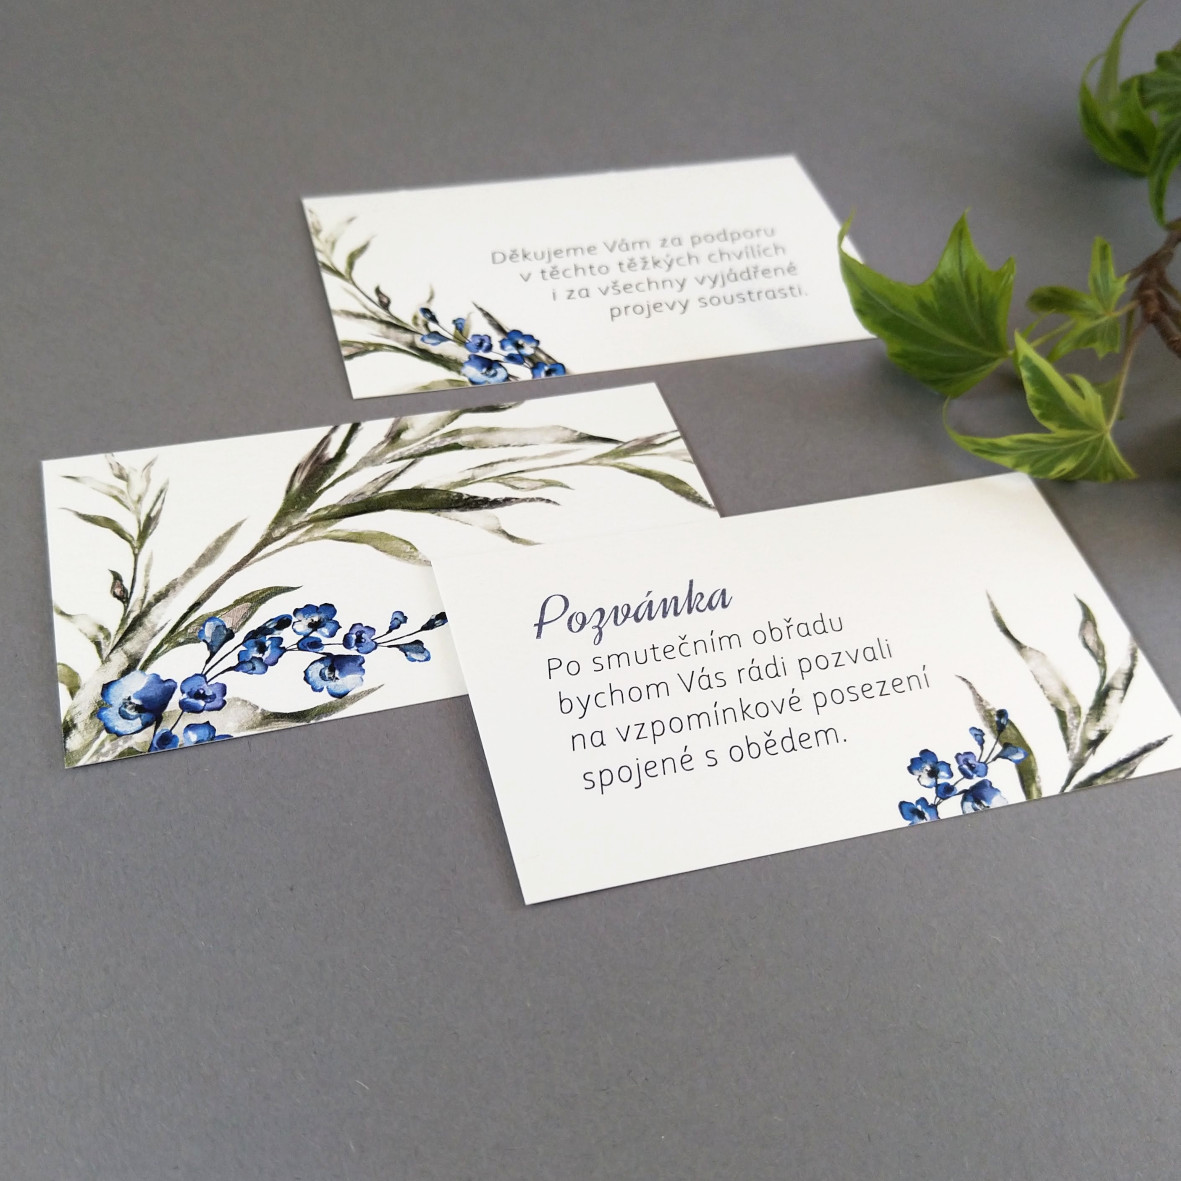 Pozvánka, informační karta – s motivem ratolesti a drobných modrých květů, formát 85 × 55 mm, oboustranná